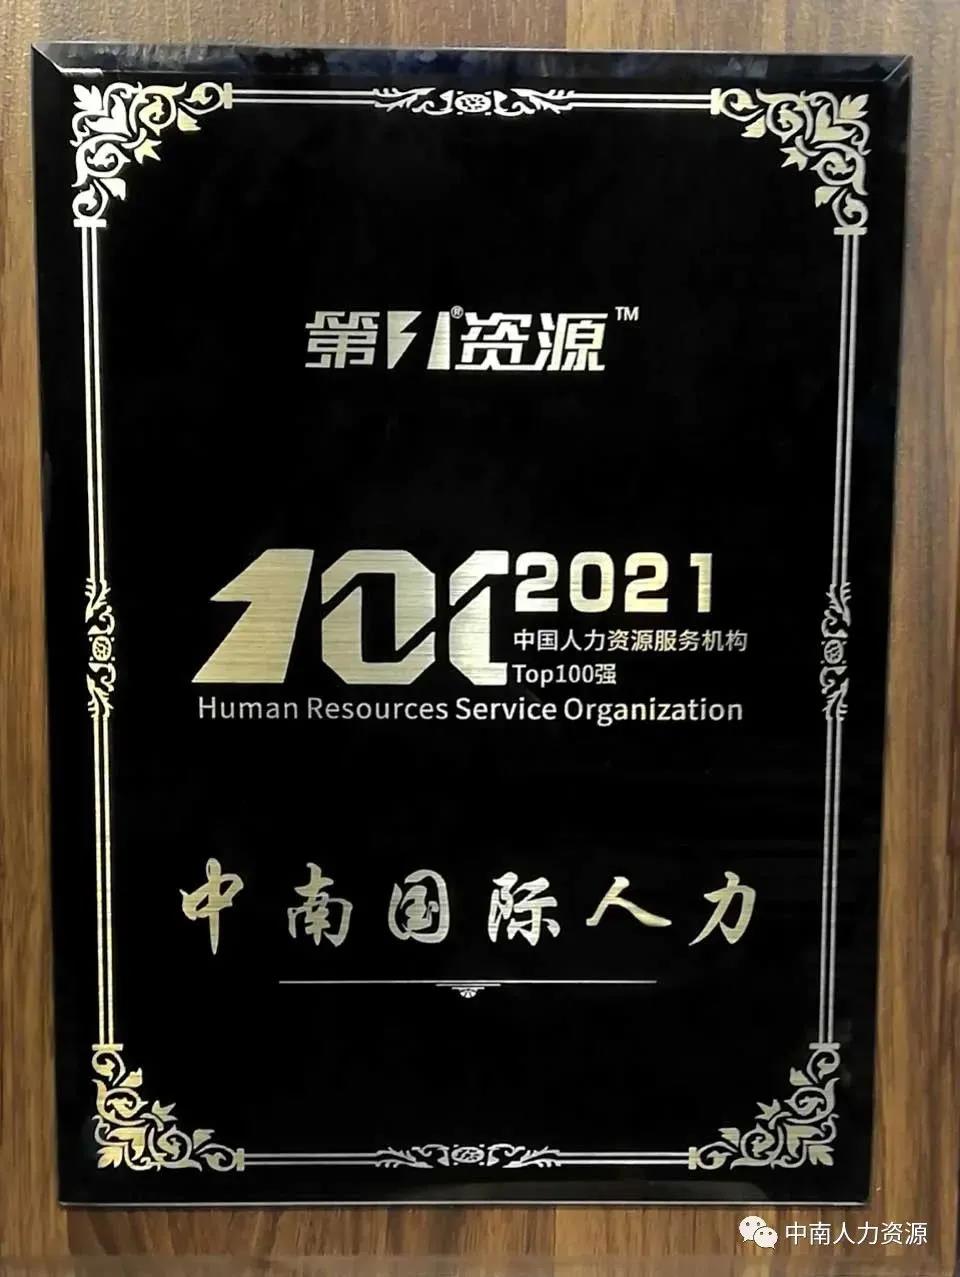 荣获”2021中国人力资源服务机构Top100强“